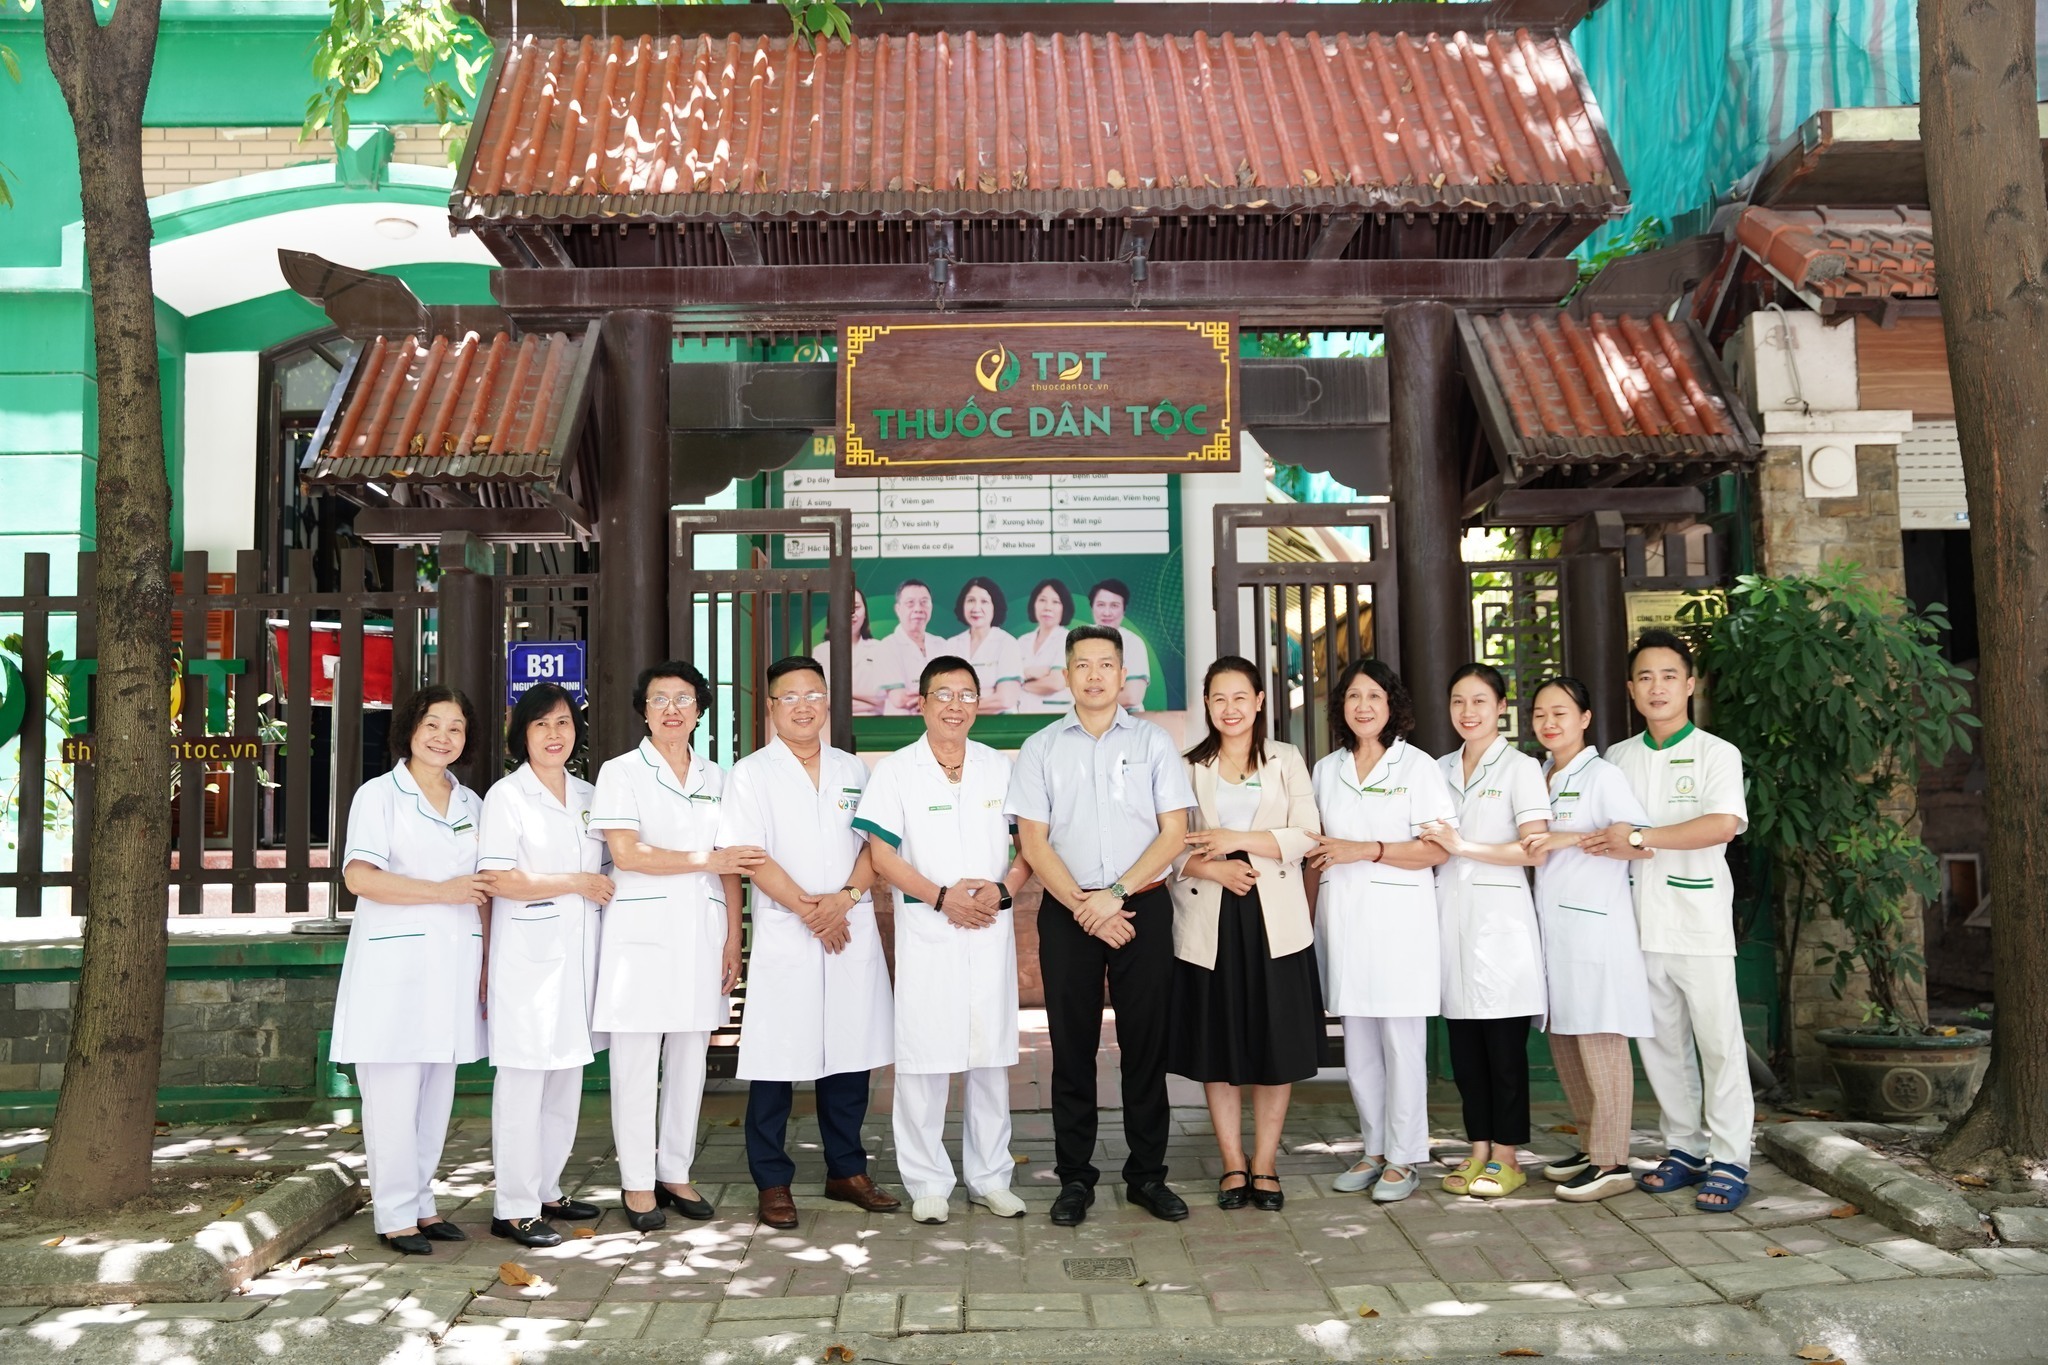 Trung tâm Thuốc Dân Tộc với hơn 12 năm hoạt động - Nơi làm việc của cô Hà tại Hà Nội